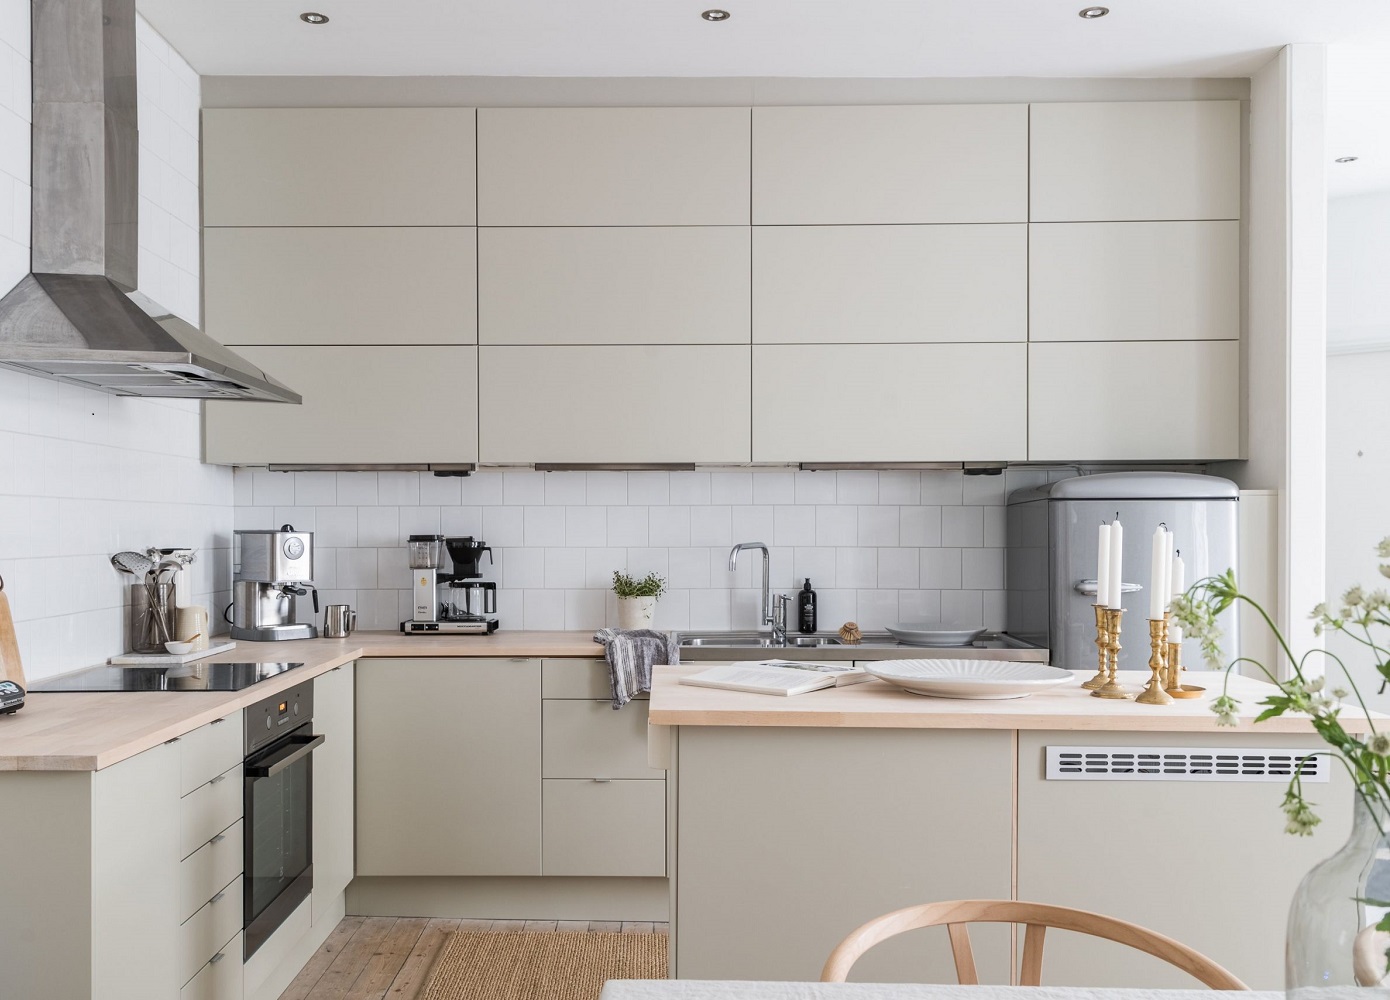 Бежевые кухонные шкафы - 3 идеальные идеи для увлекательного интерьера